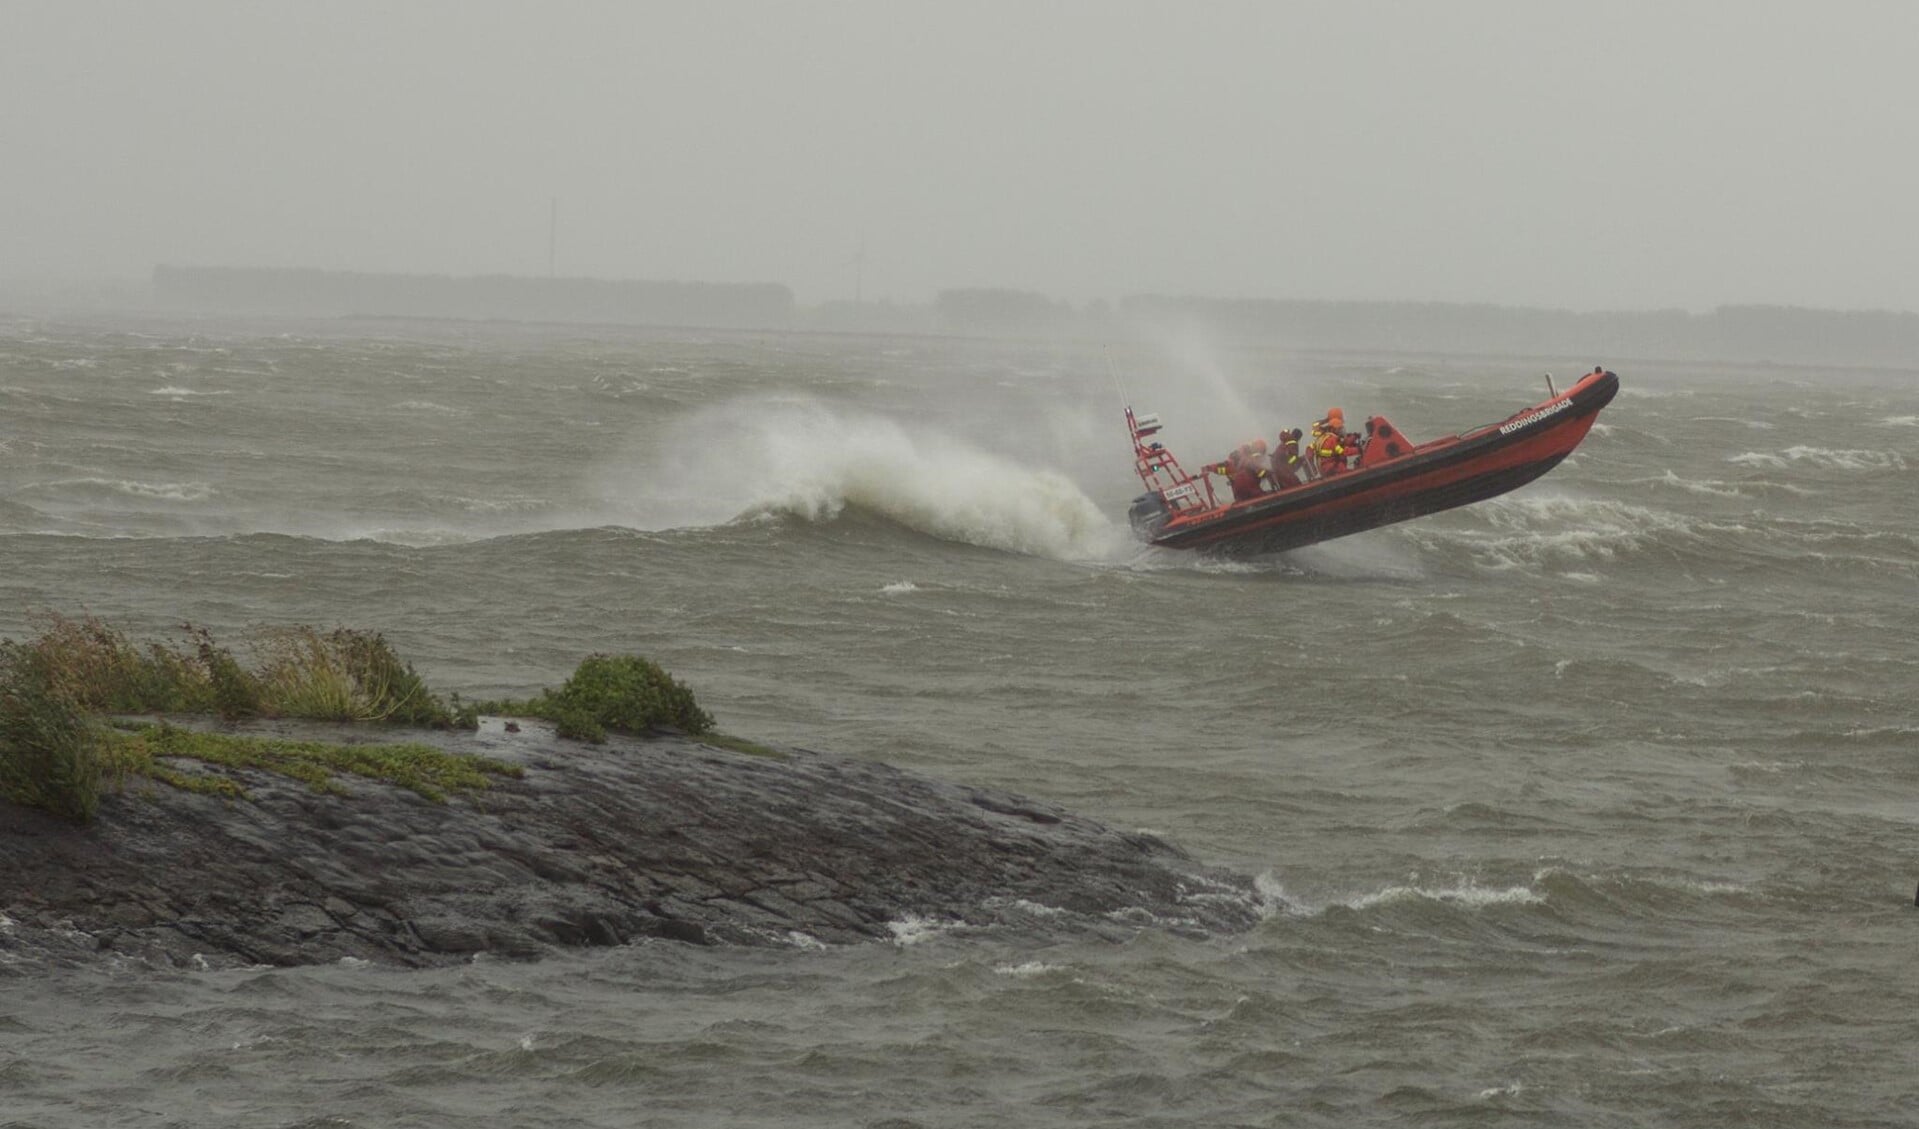 de storm tilt de boot van de reddingsbrigade uit het water